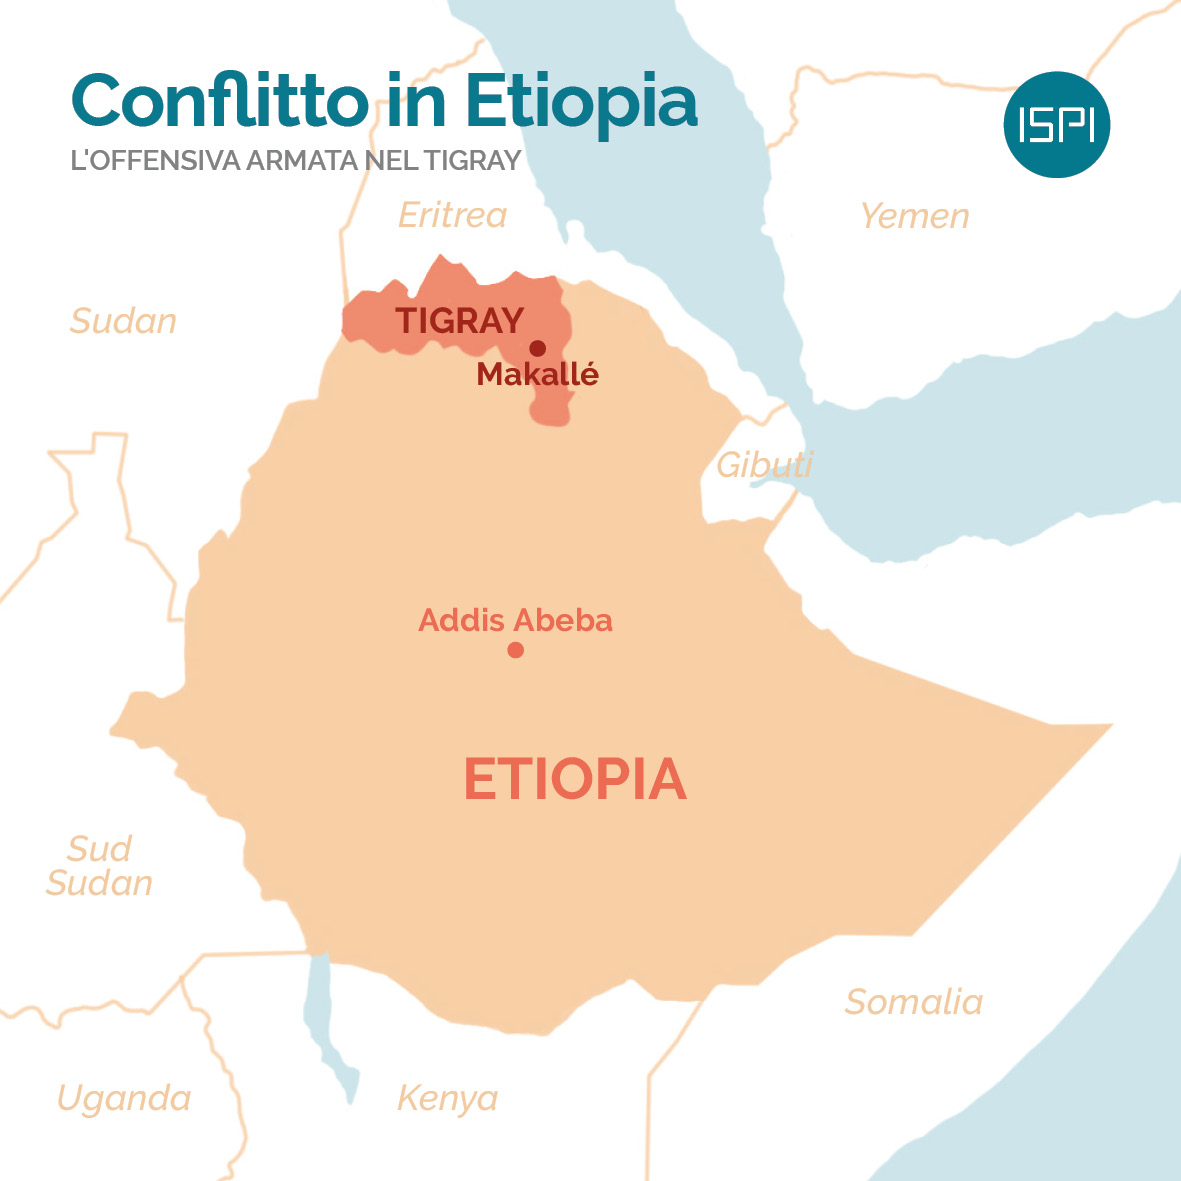 https://campaign-image.eu/zohocampaigns/28716000060930060_zc_v9_1605200371540_mappa___conflitto_in_etiopia.jpg